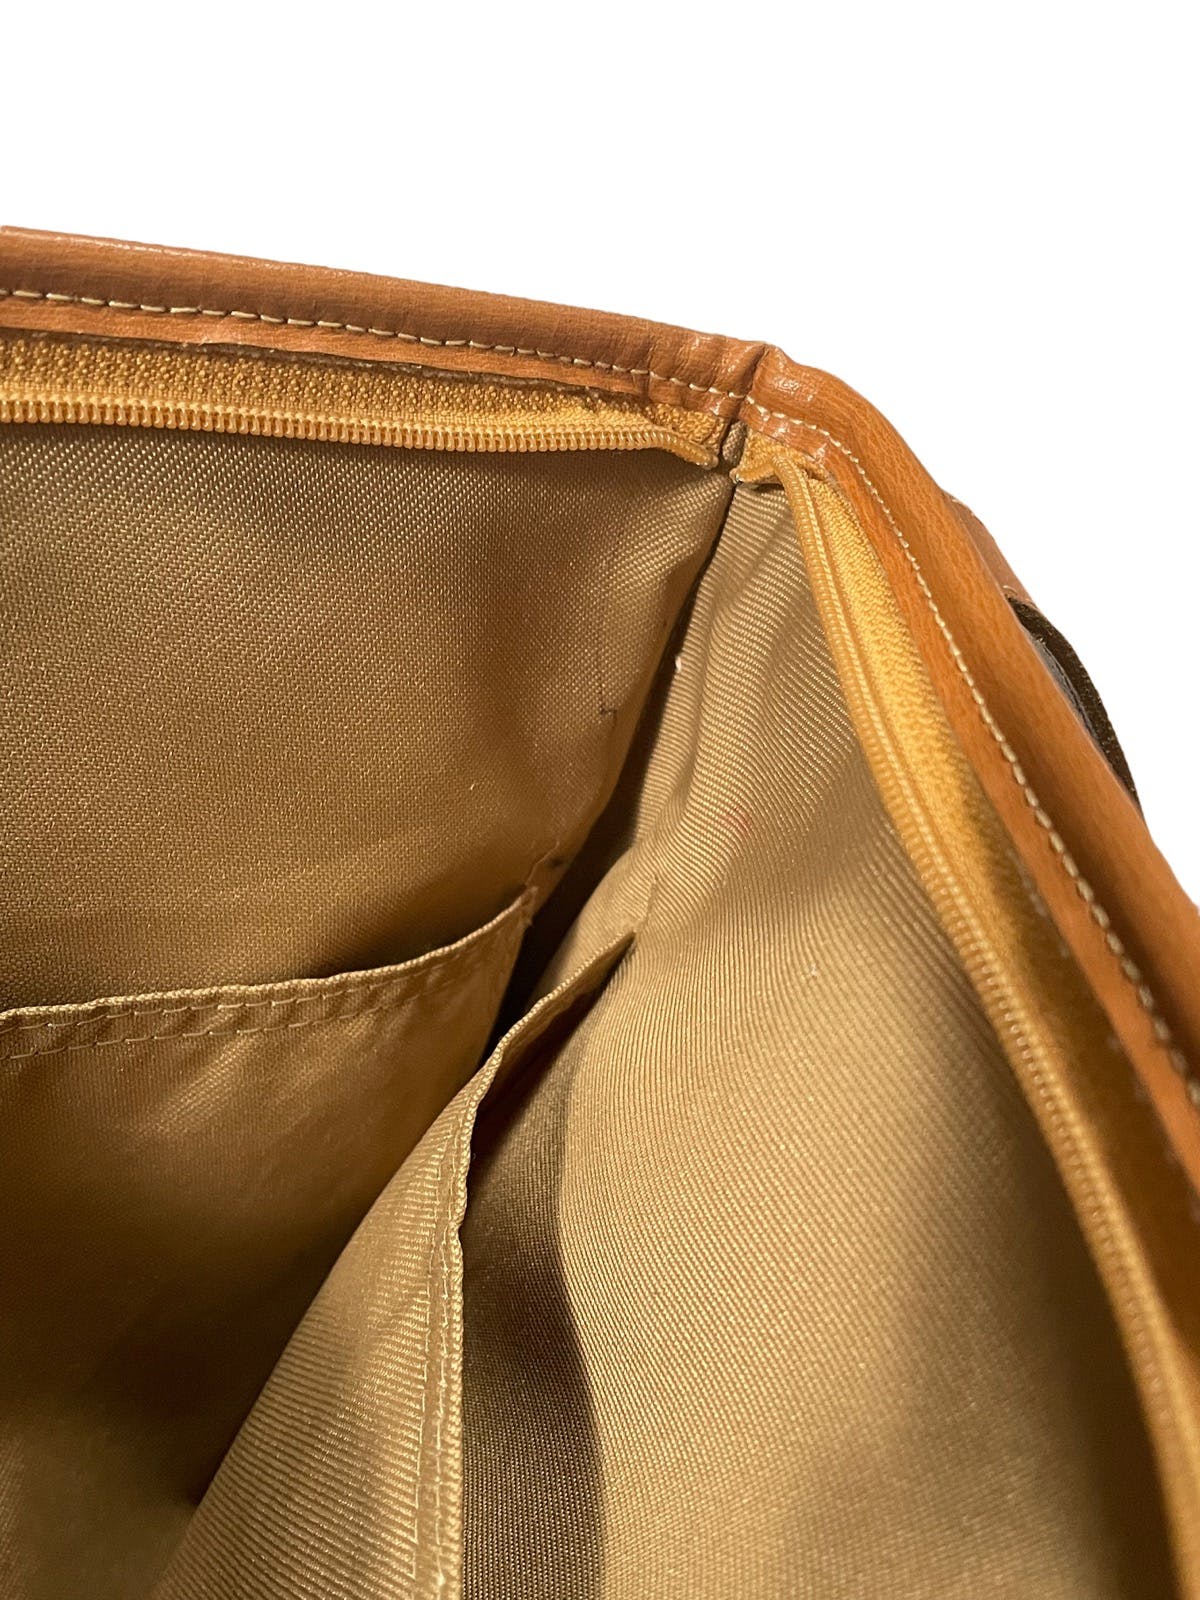 Vintage Leather Adjustable Shoulder Bag - 12